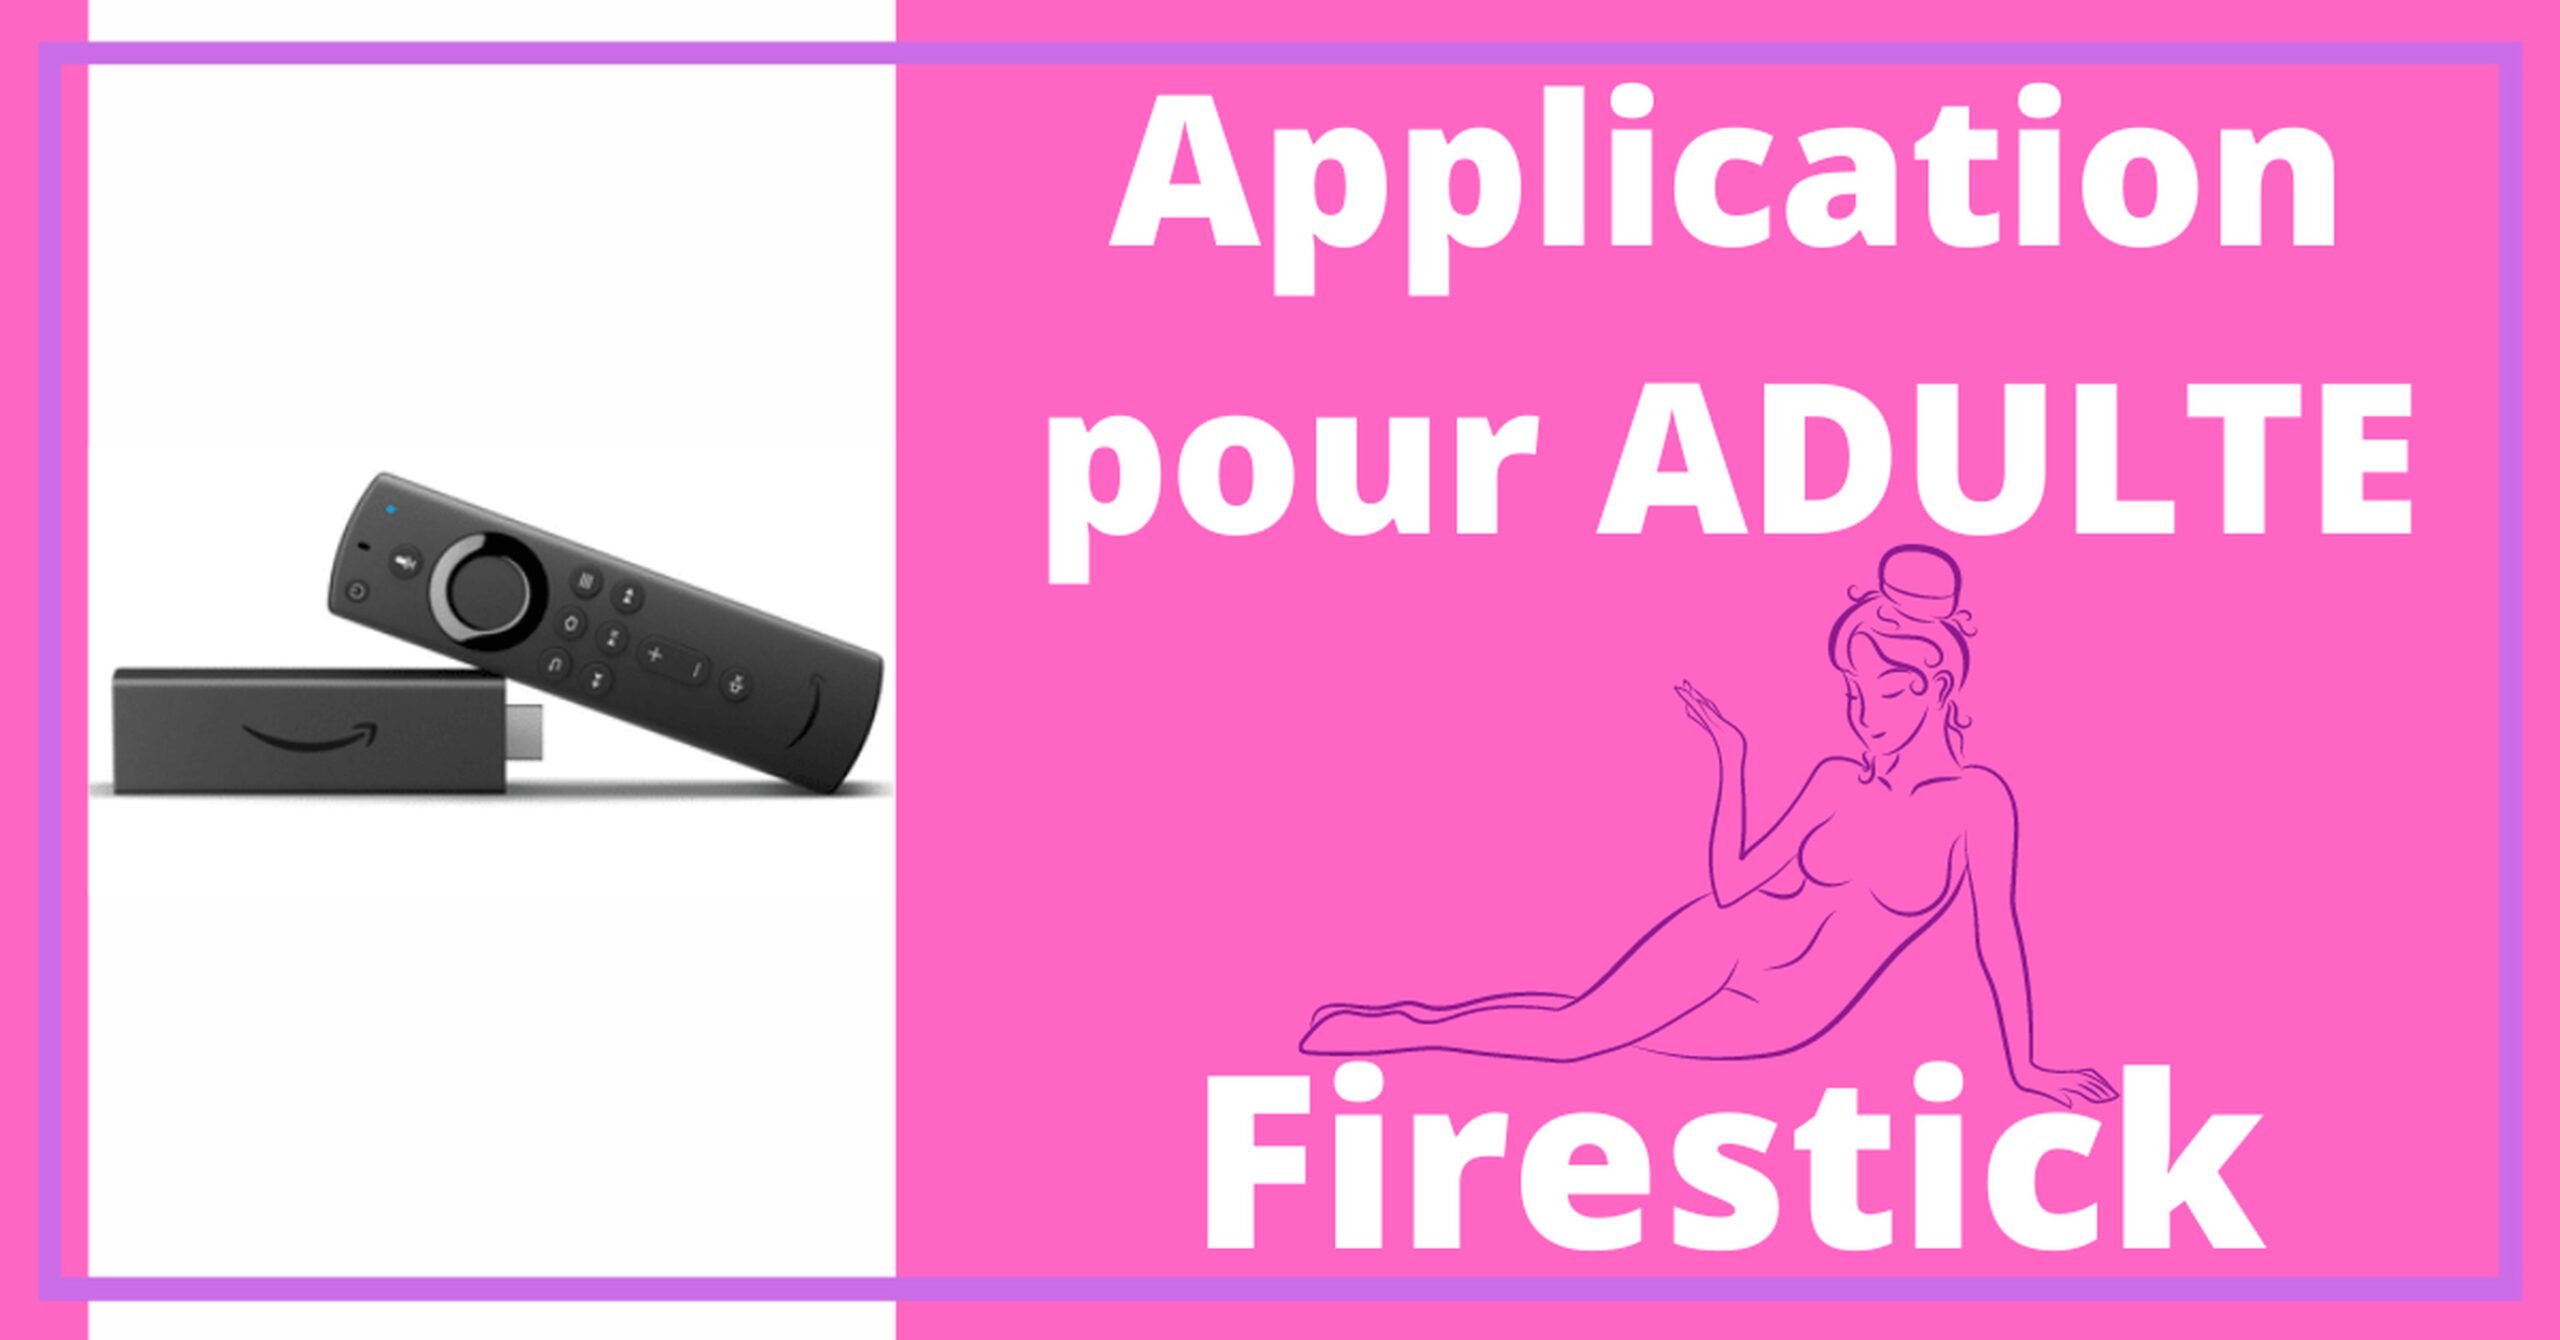 Fire TV Stick - Meilleure Application Adulte pour Fire TV 5